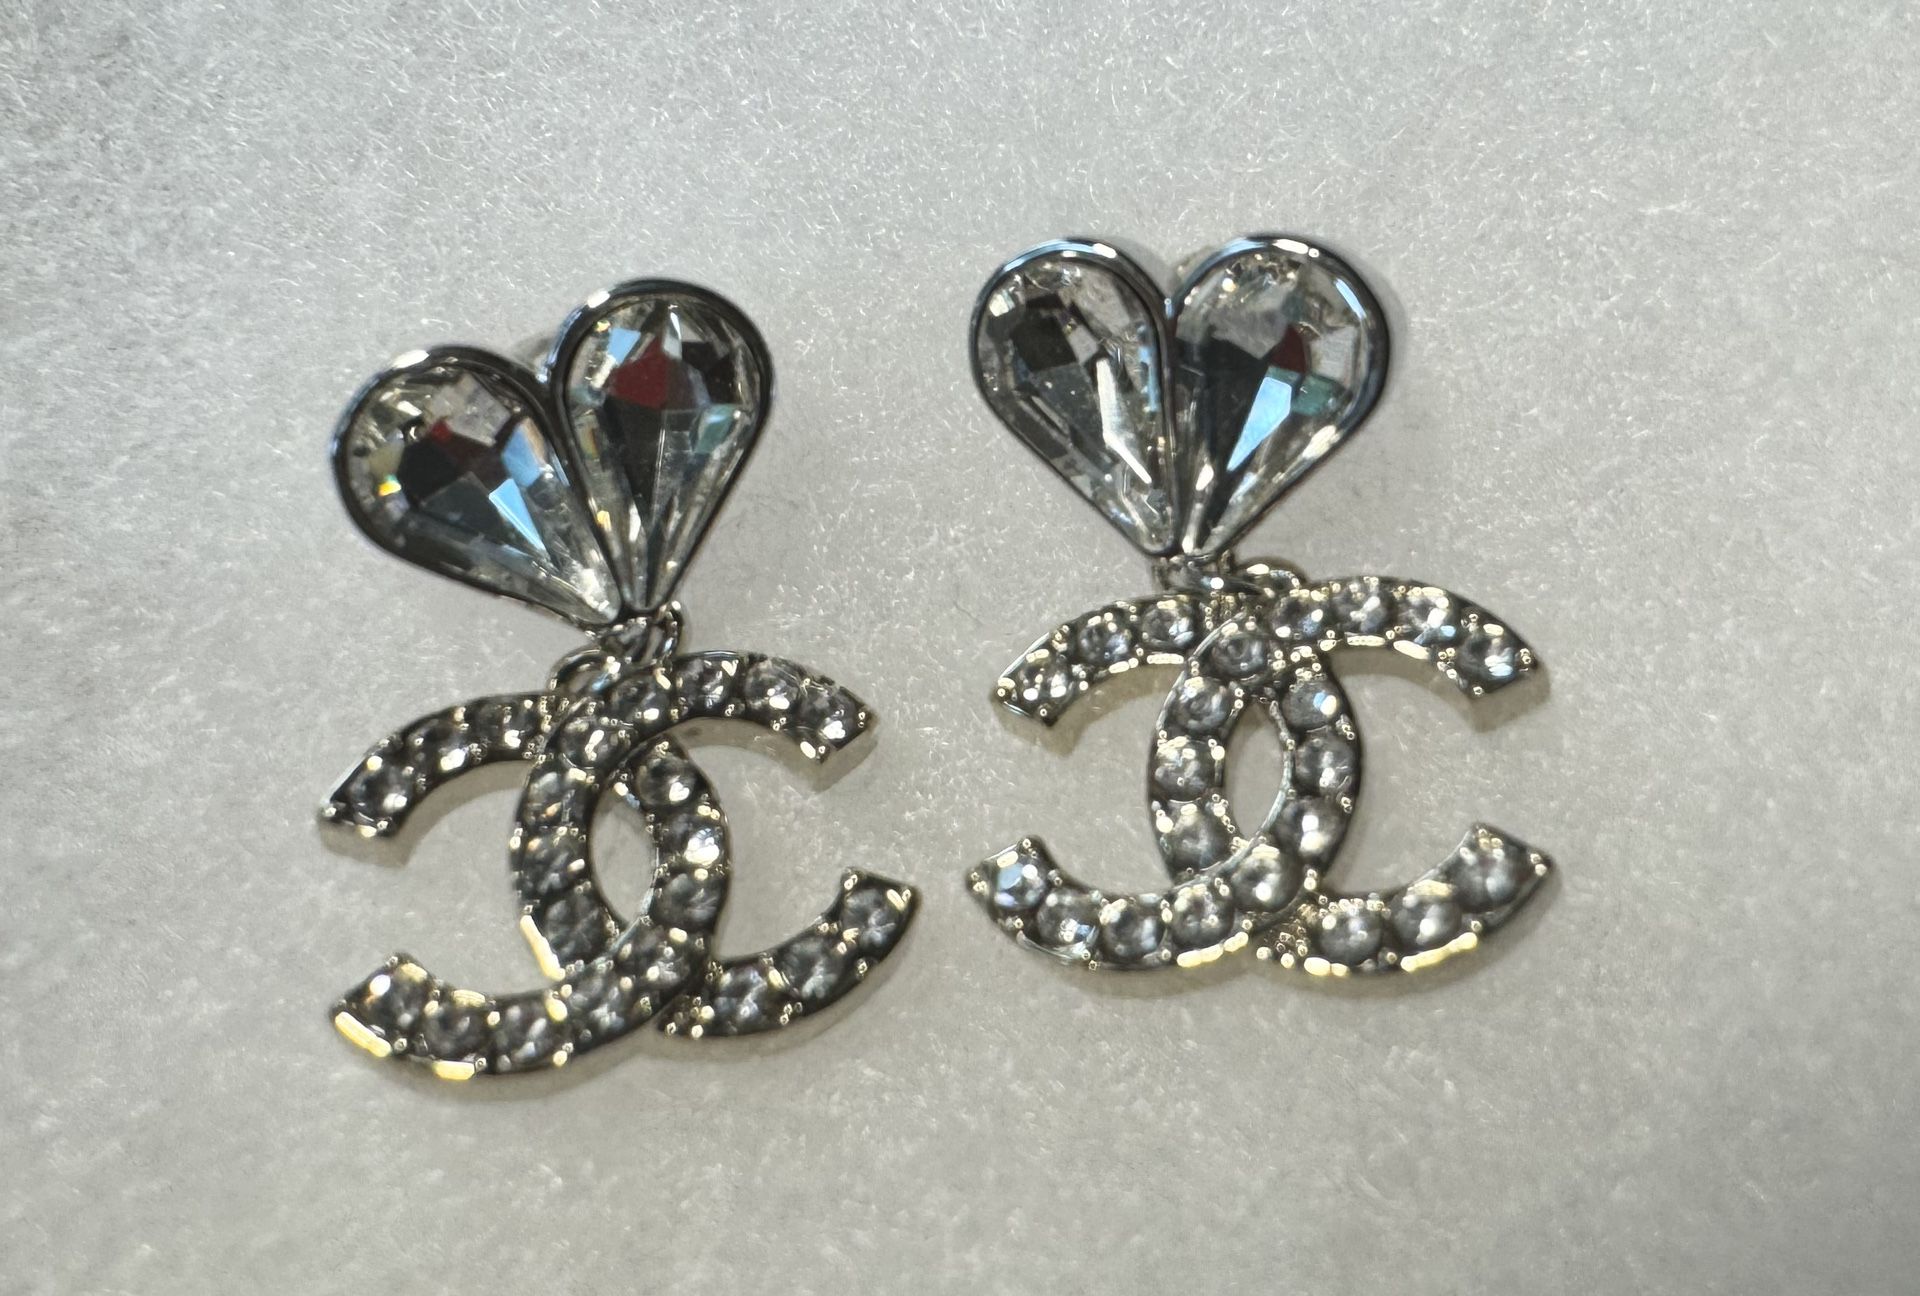 CC Heart Crystal Silver Dangle Earrings 